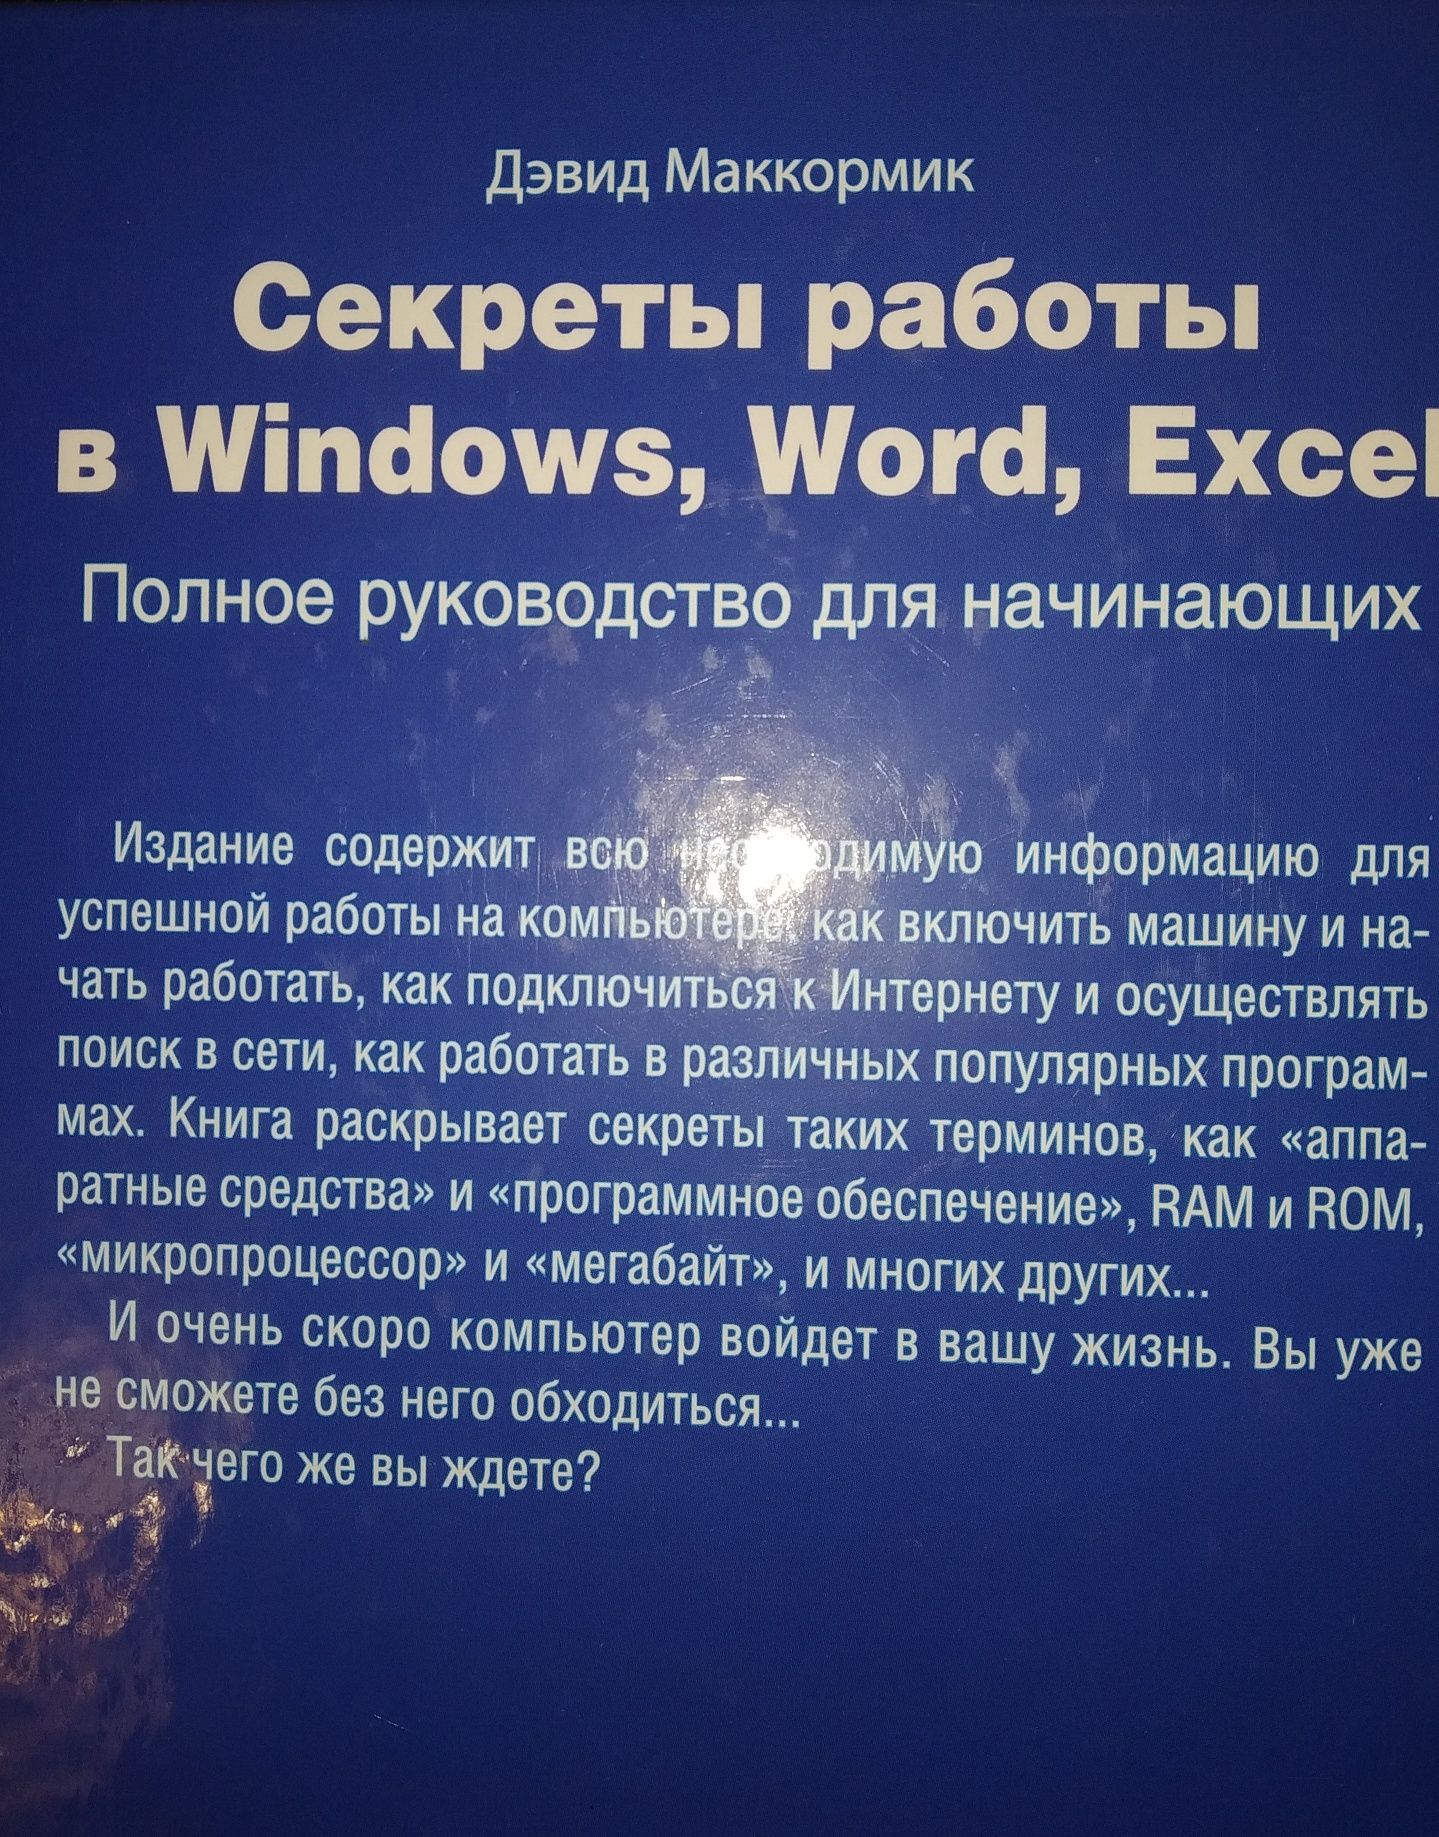 "Секреты работы в Windows, Word, Excel".